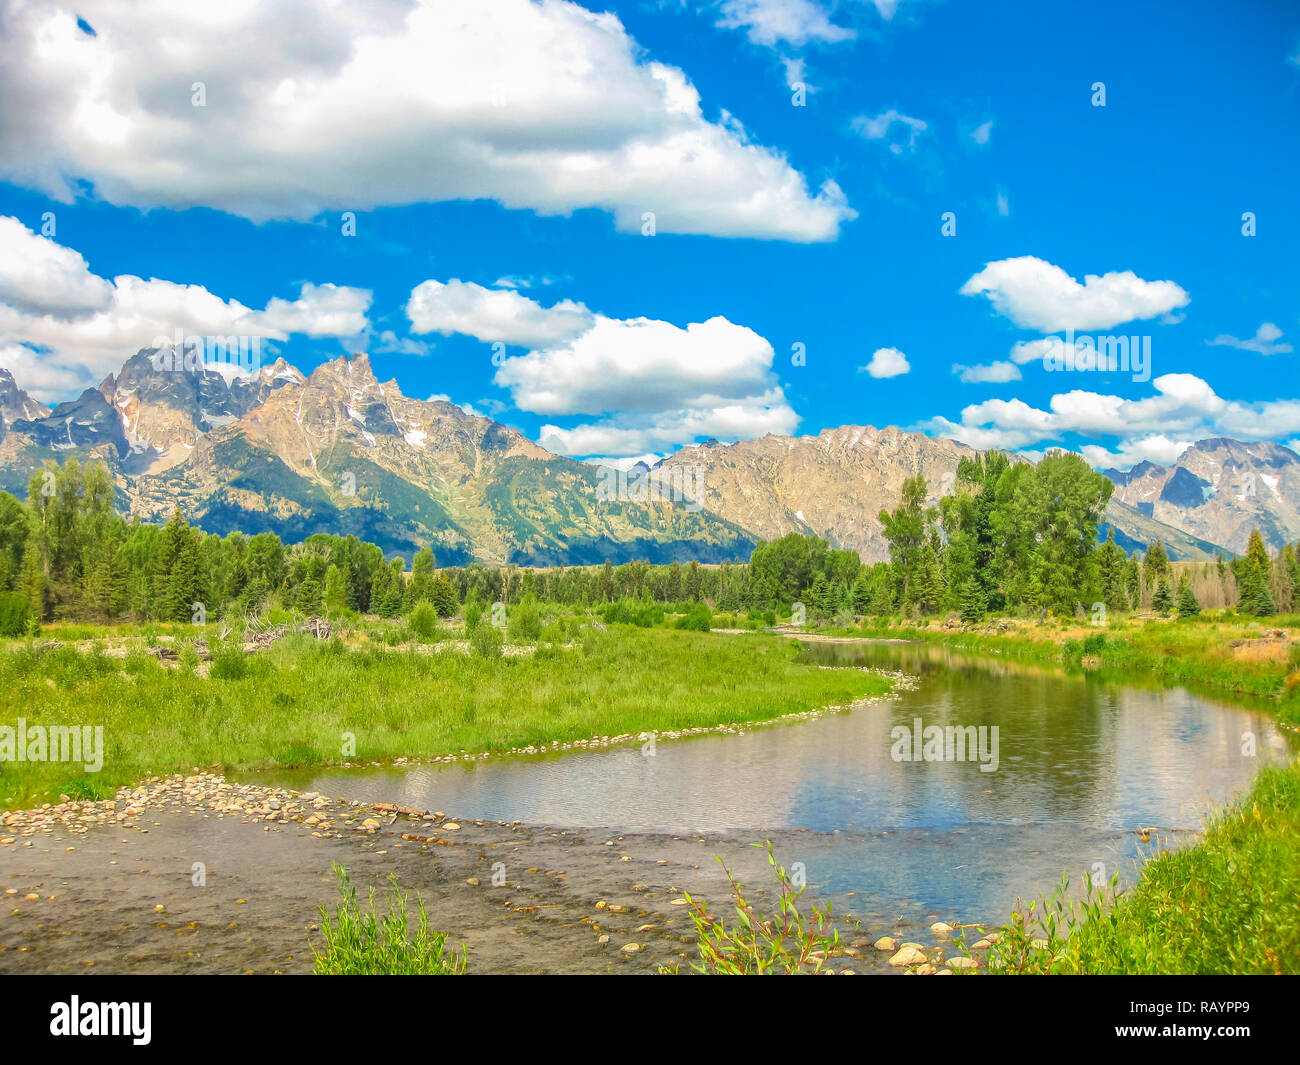 Avis de Teton Mountain Range de la Snake River à Grand Teton National Park dans le Wyoming, États-Unis. Voyage en Amérique du Nord en été. Banque D'Images